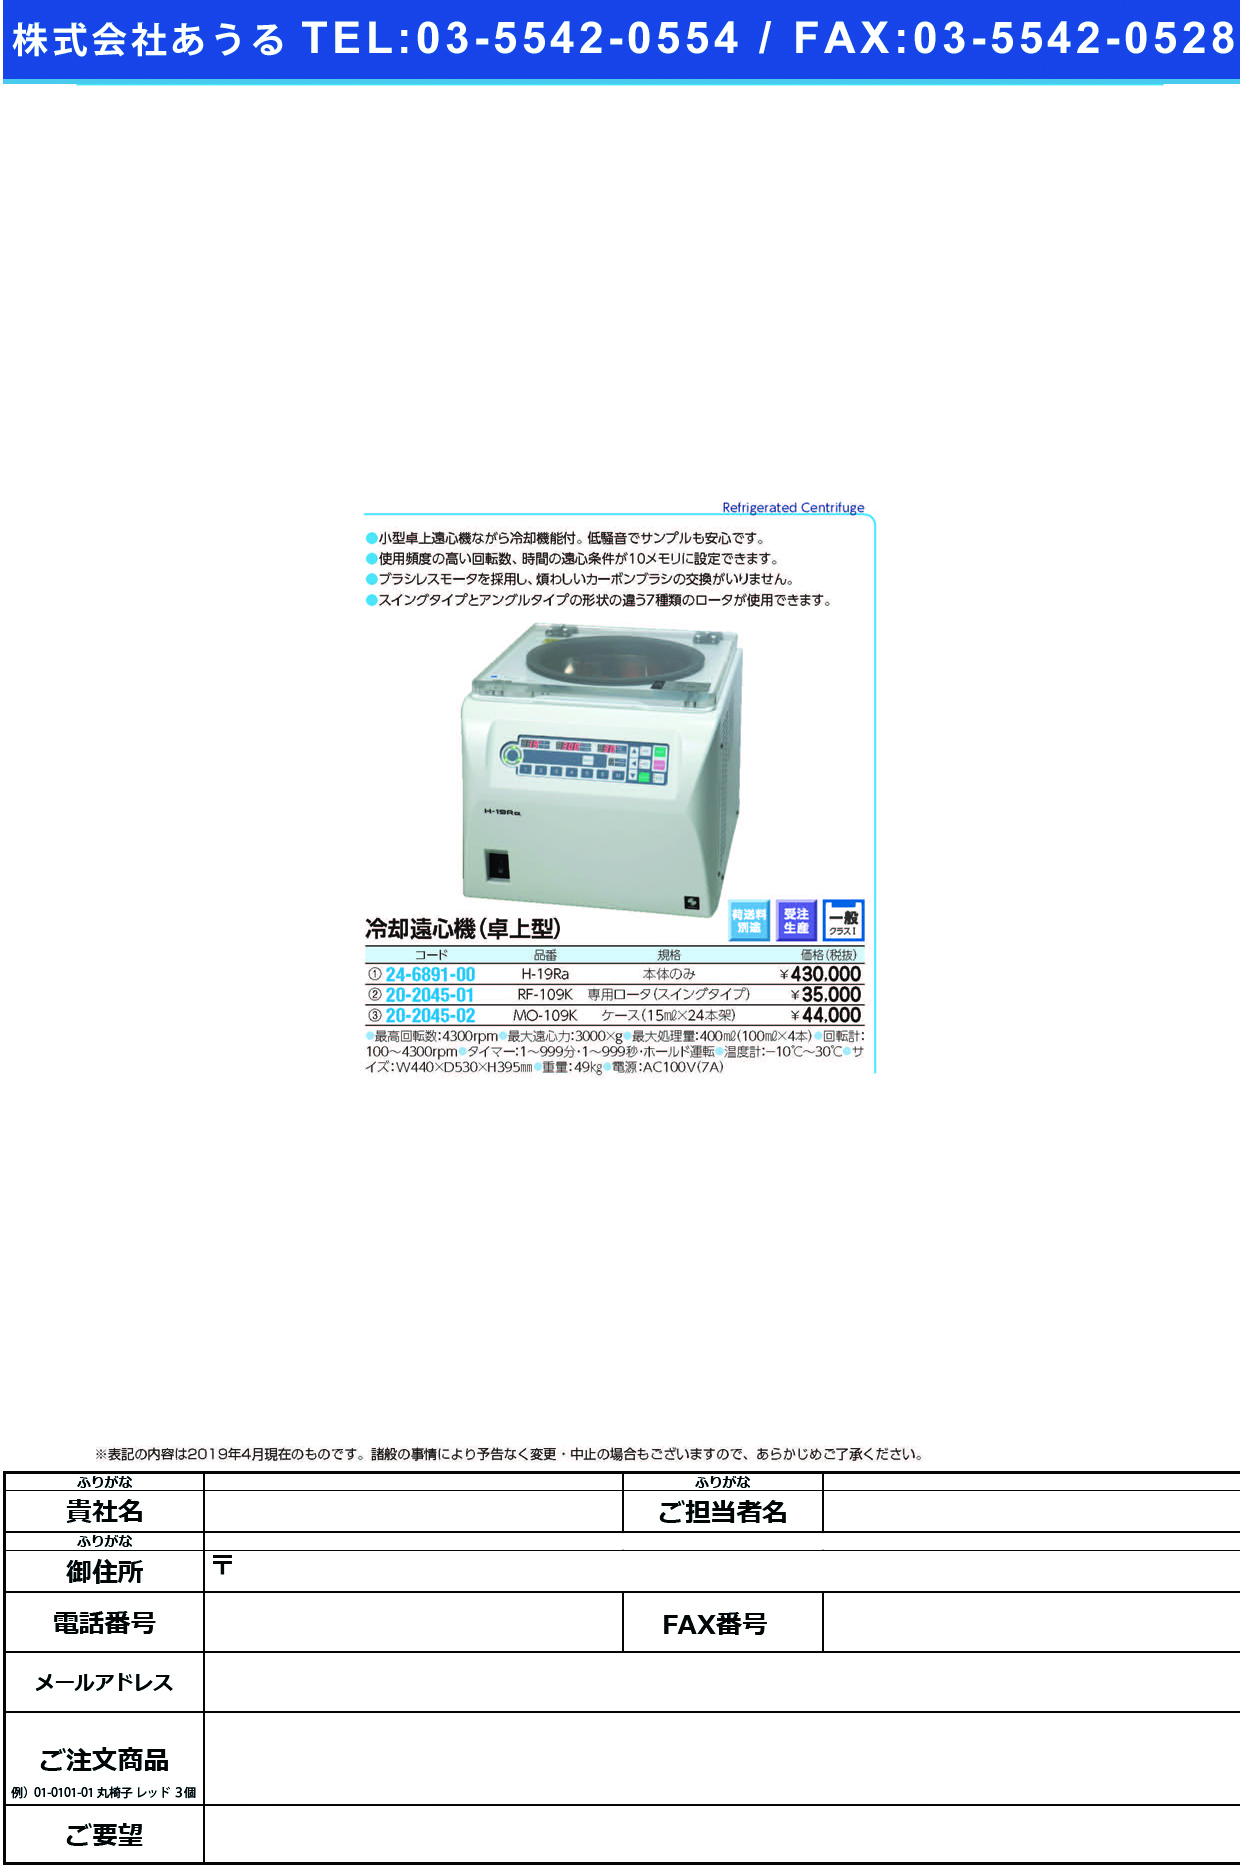 (24-6891-00)冷却遠心機（卓上型）本体のみ H-19Rｱﾙﾌｧ ﾚｲｷｬｸｴﾝｼﾝｷﾎﾝﾀｲﾉﾐ【1台単位】【2019年カタログ商品】